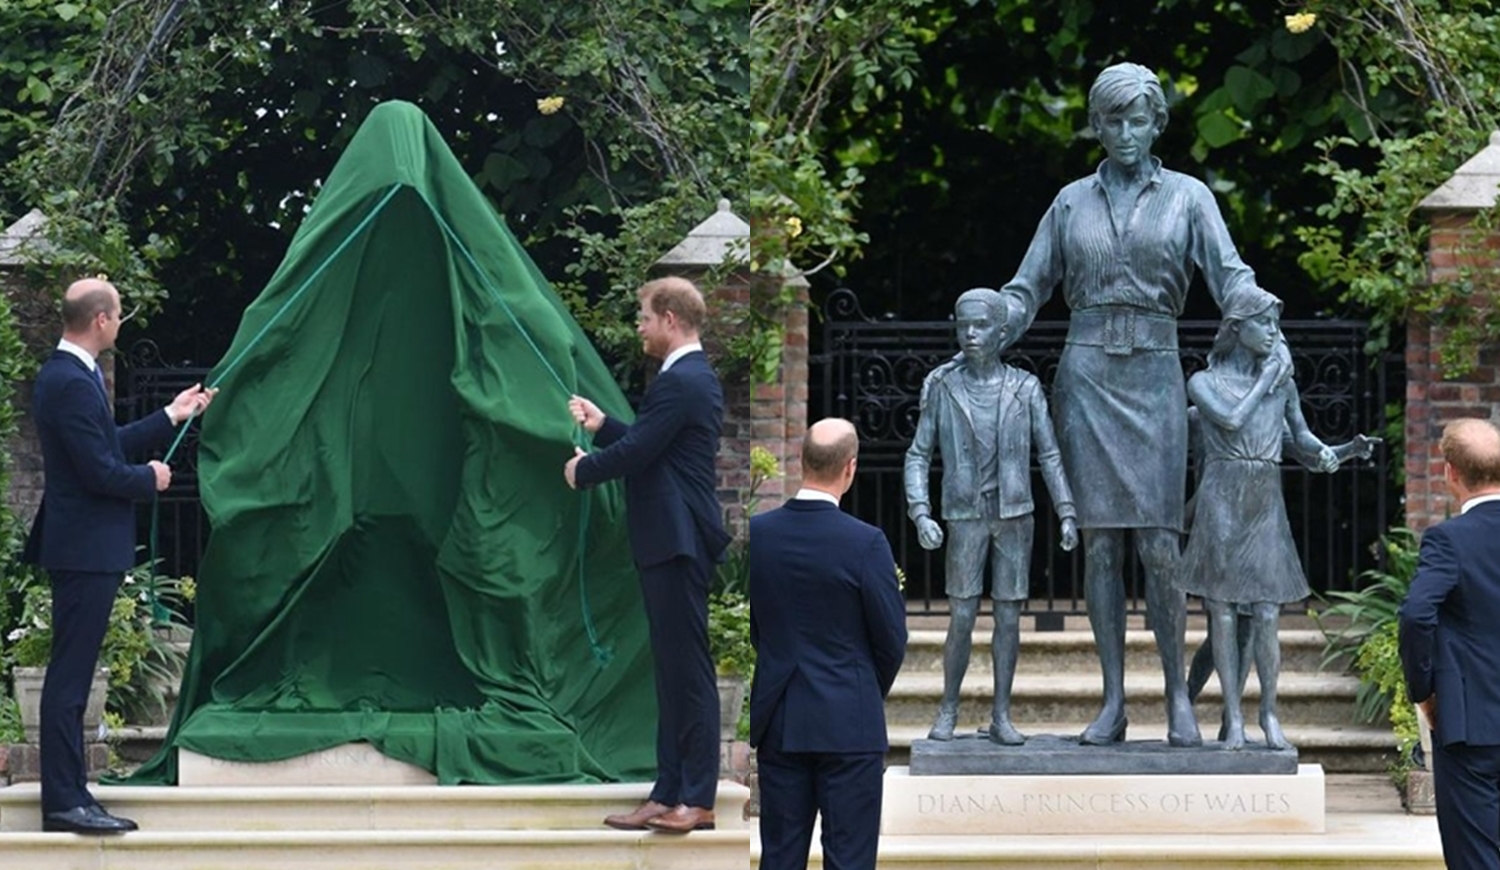 Foto do momento da inauguração da estátua de Diana.